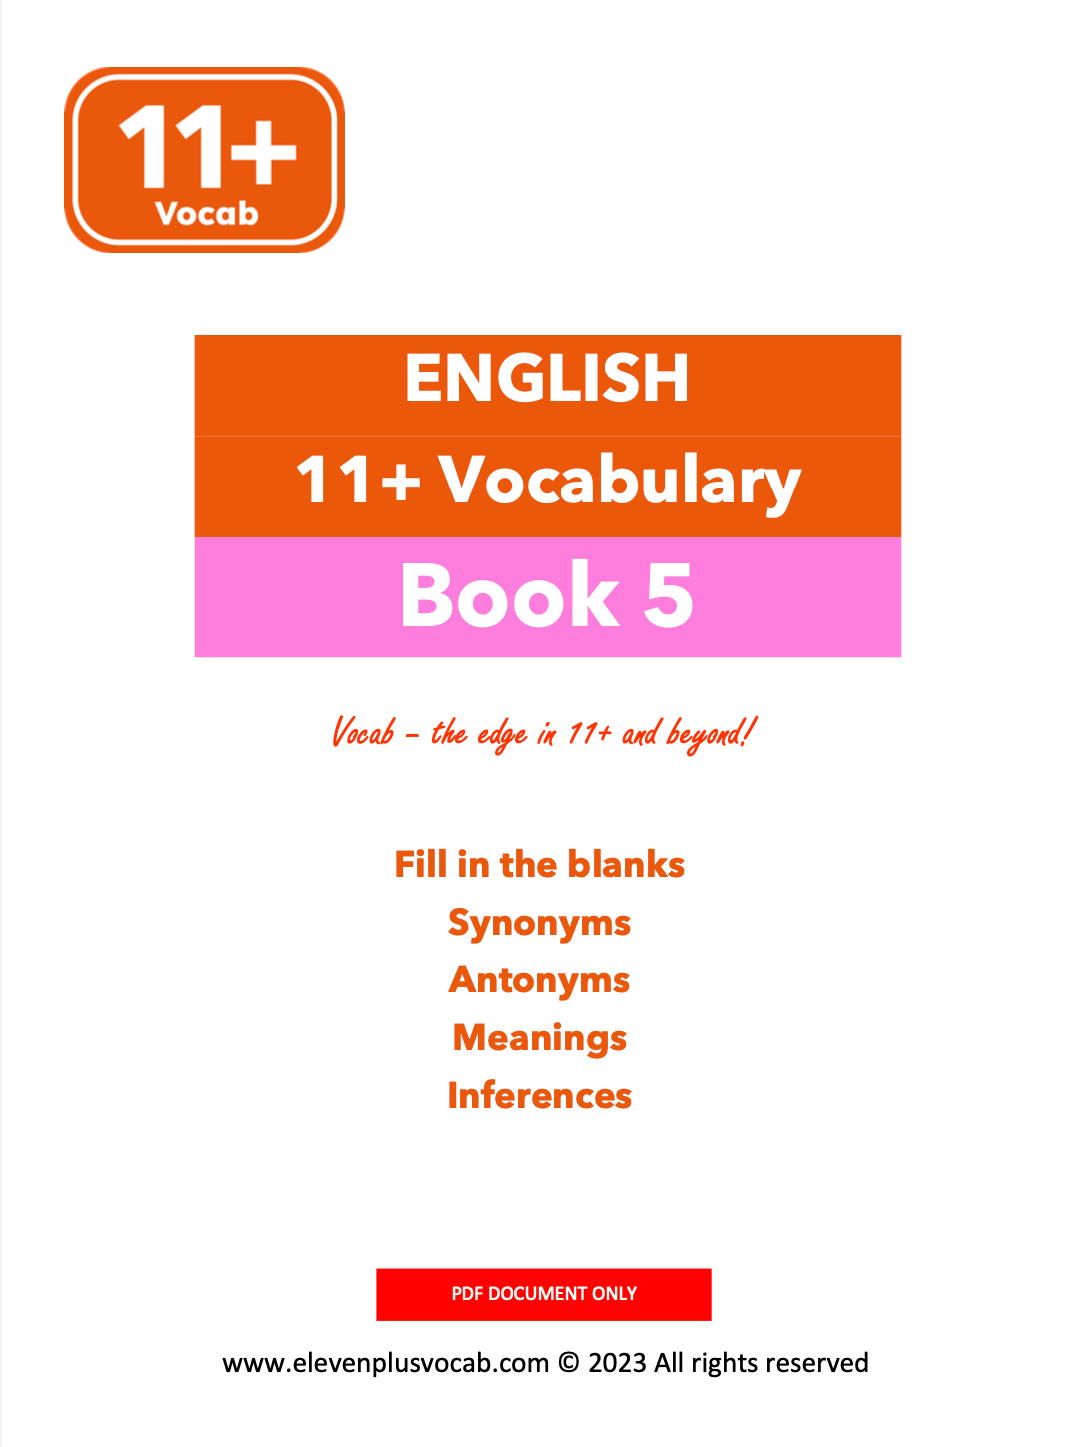 11+ English Vocab - PDF Book 5